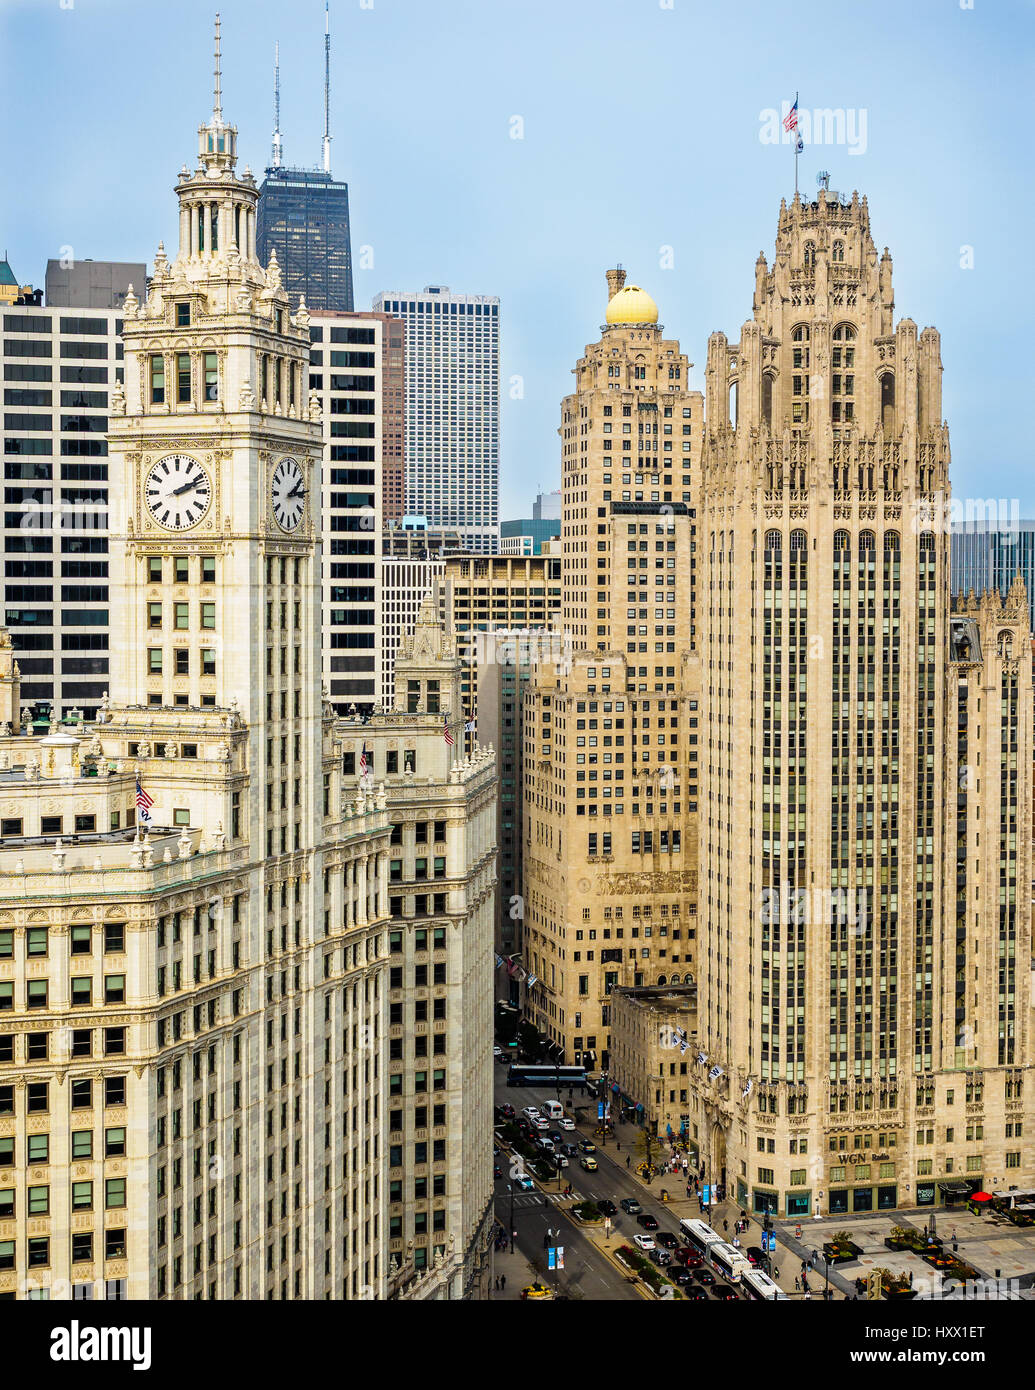 Il Wrigley Building e la Tribune Tower - affacciati su Michigan Avenue, Chicago. Entrambe le società di proprietà del Chicago Cubs troppo. Foto Stock